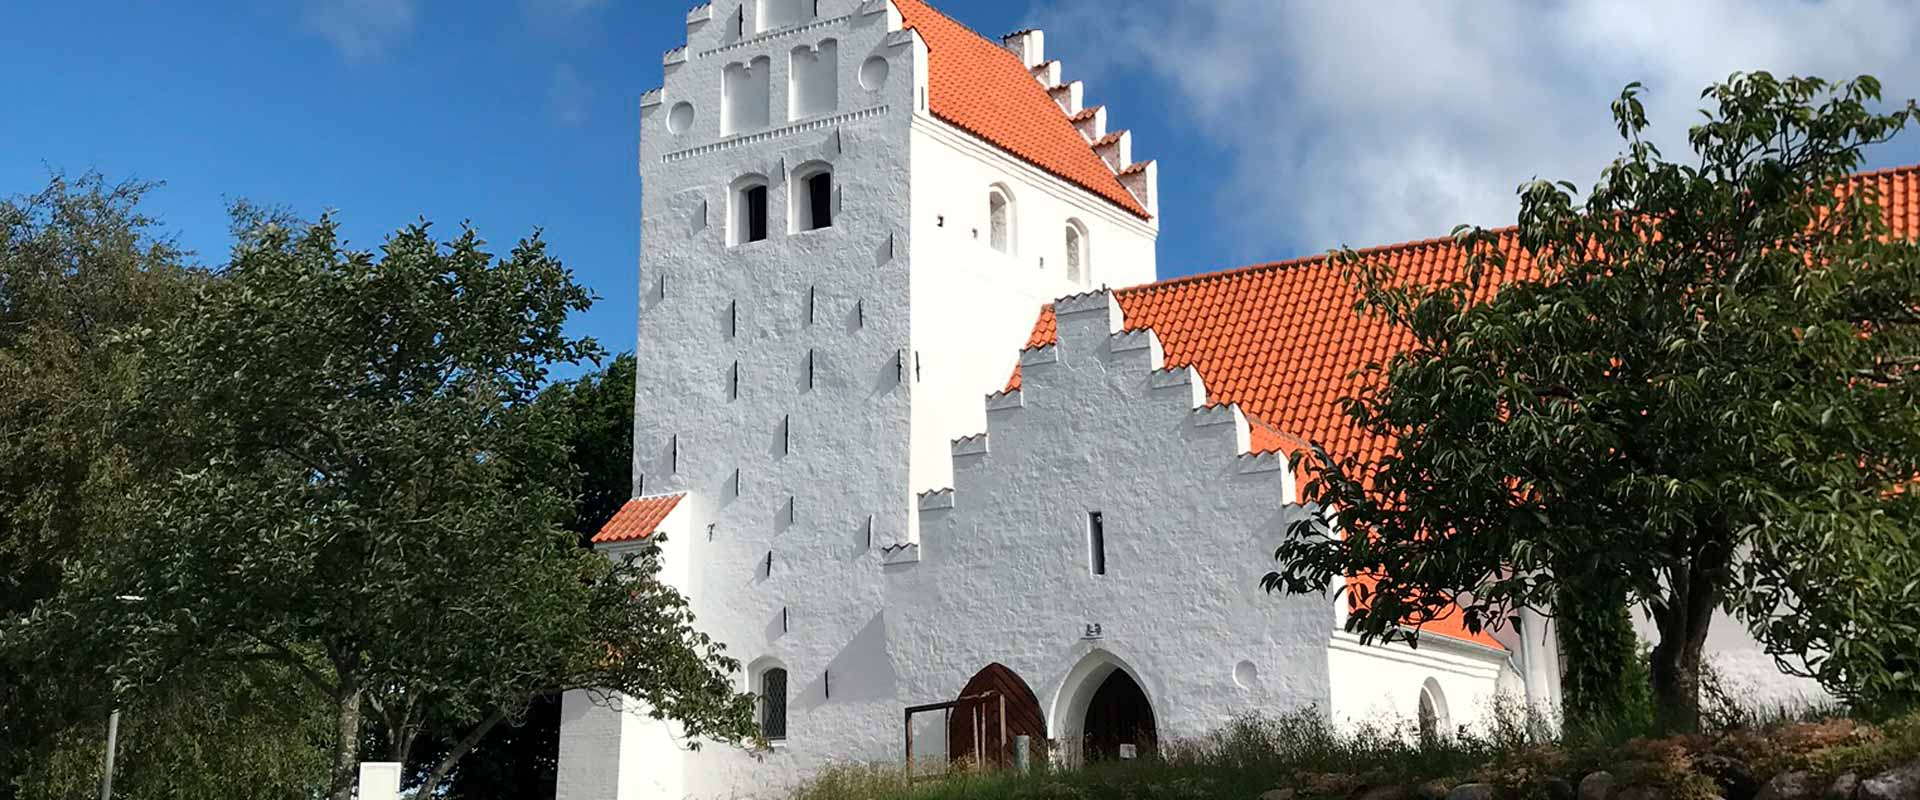 Onsbjerg Kirke tårn og indgangsparti Samsø